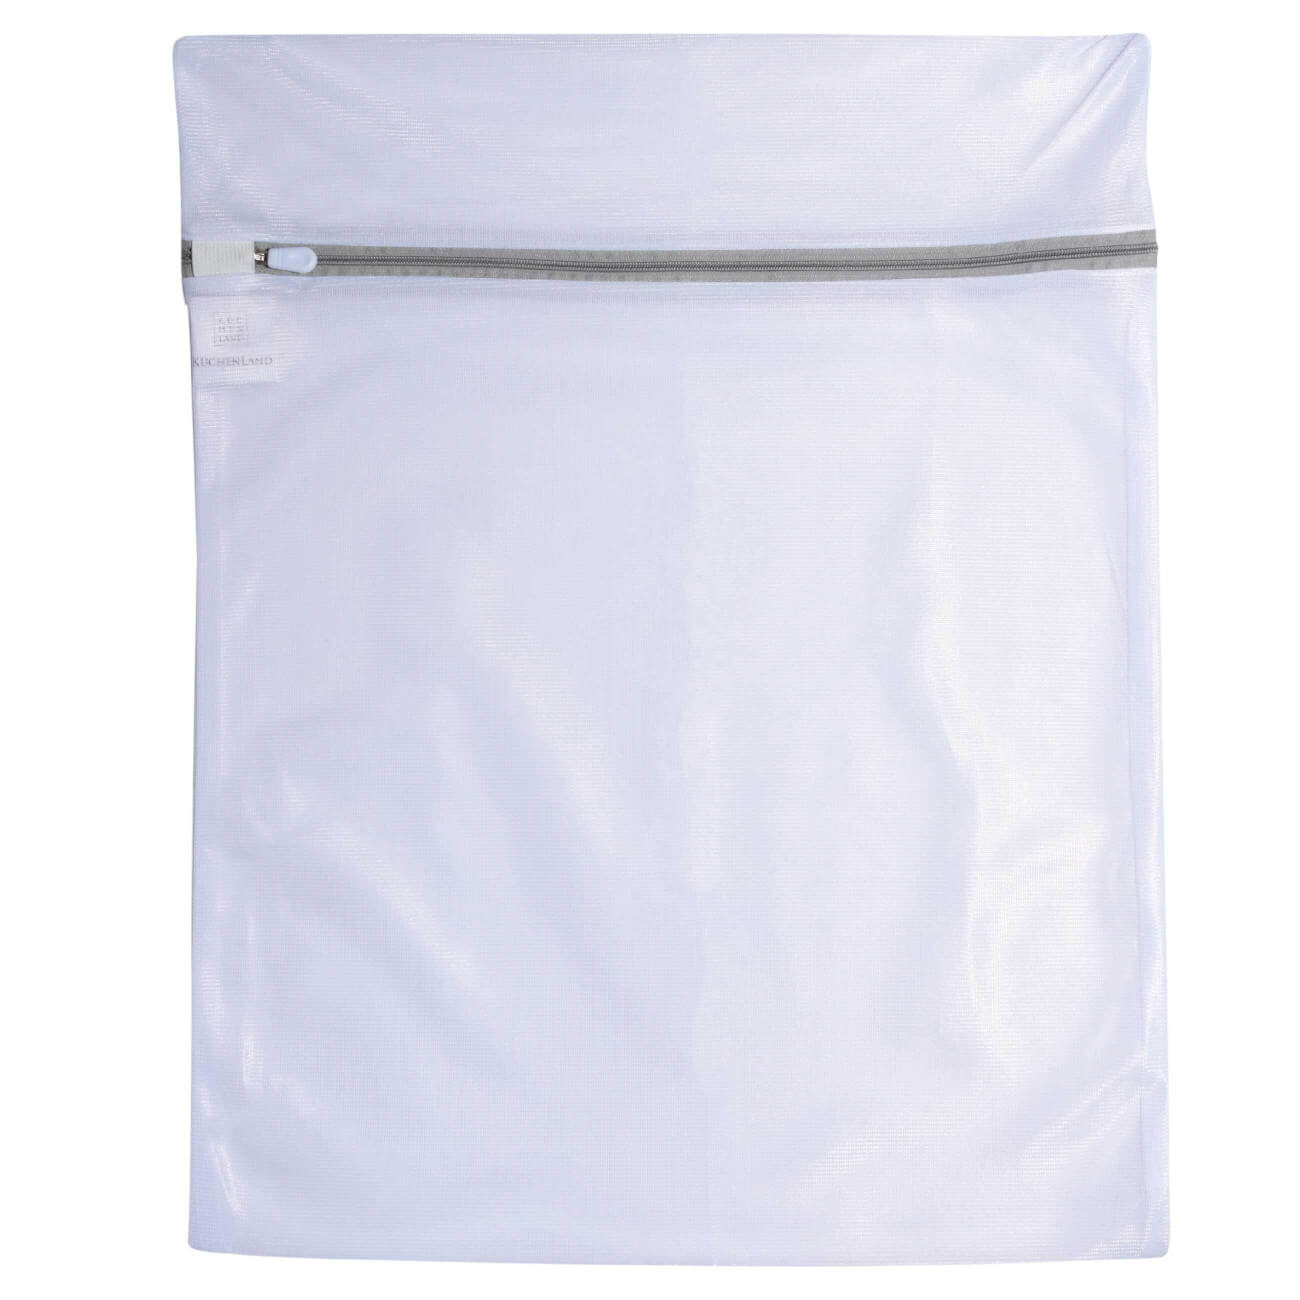 Мешок для стирки одежды, 40х50 см, полиэстер, бело-серый, Safety plus мешок для стирки бюстгальтеров essentielb цвет белый